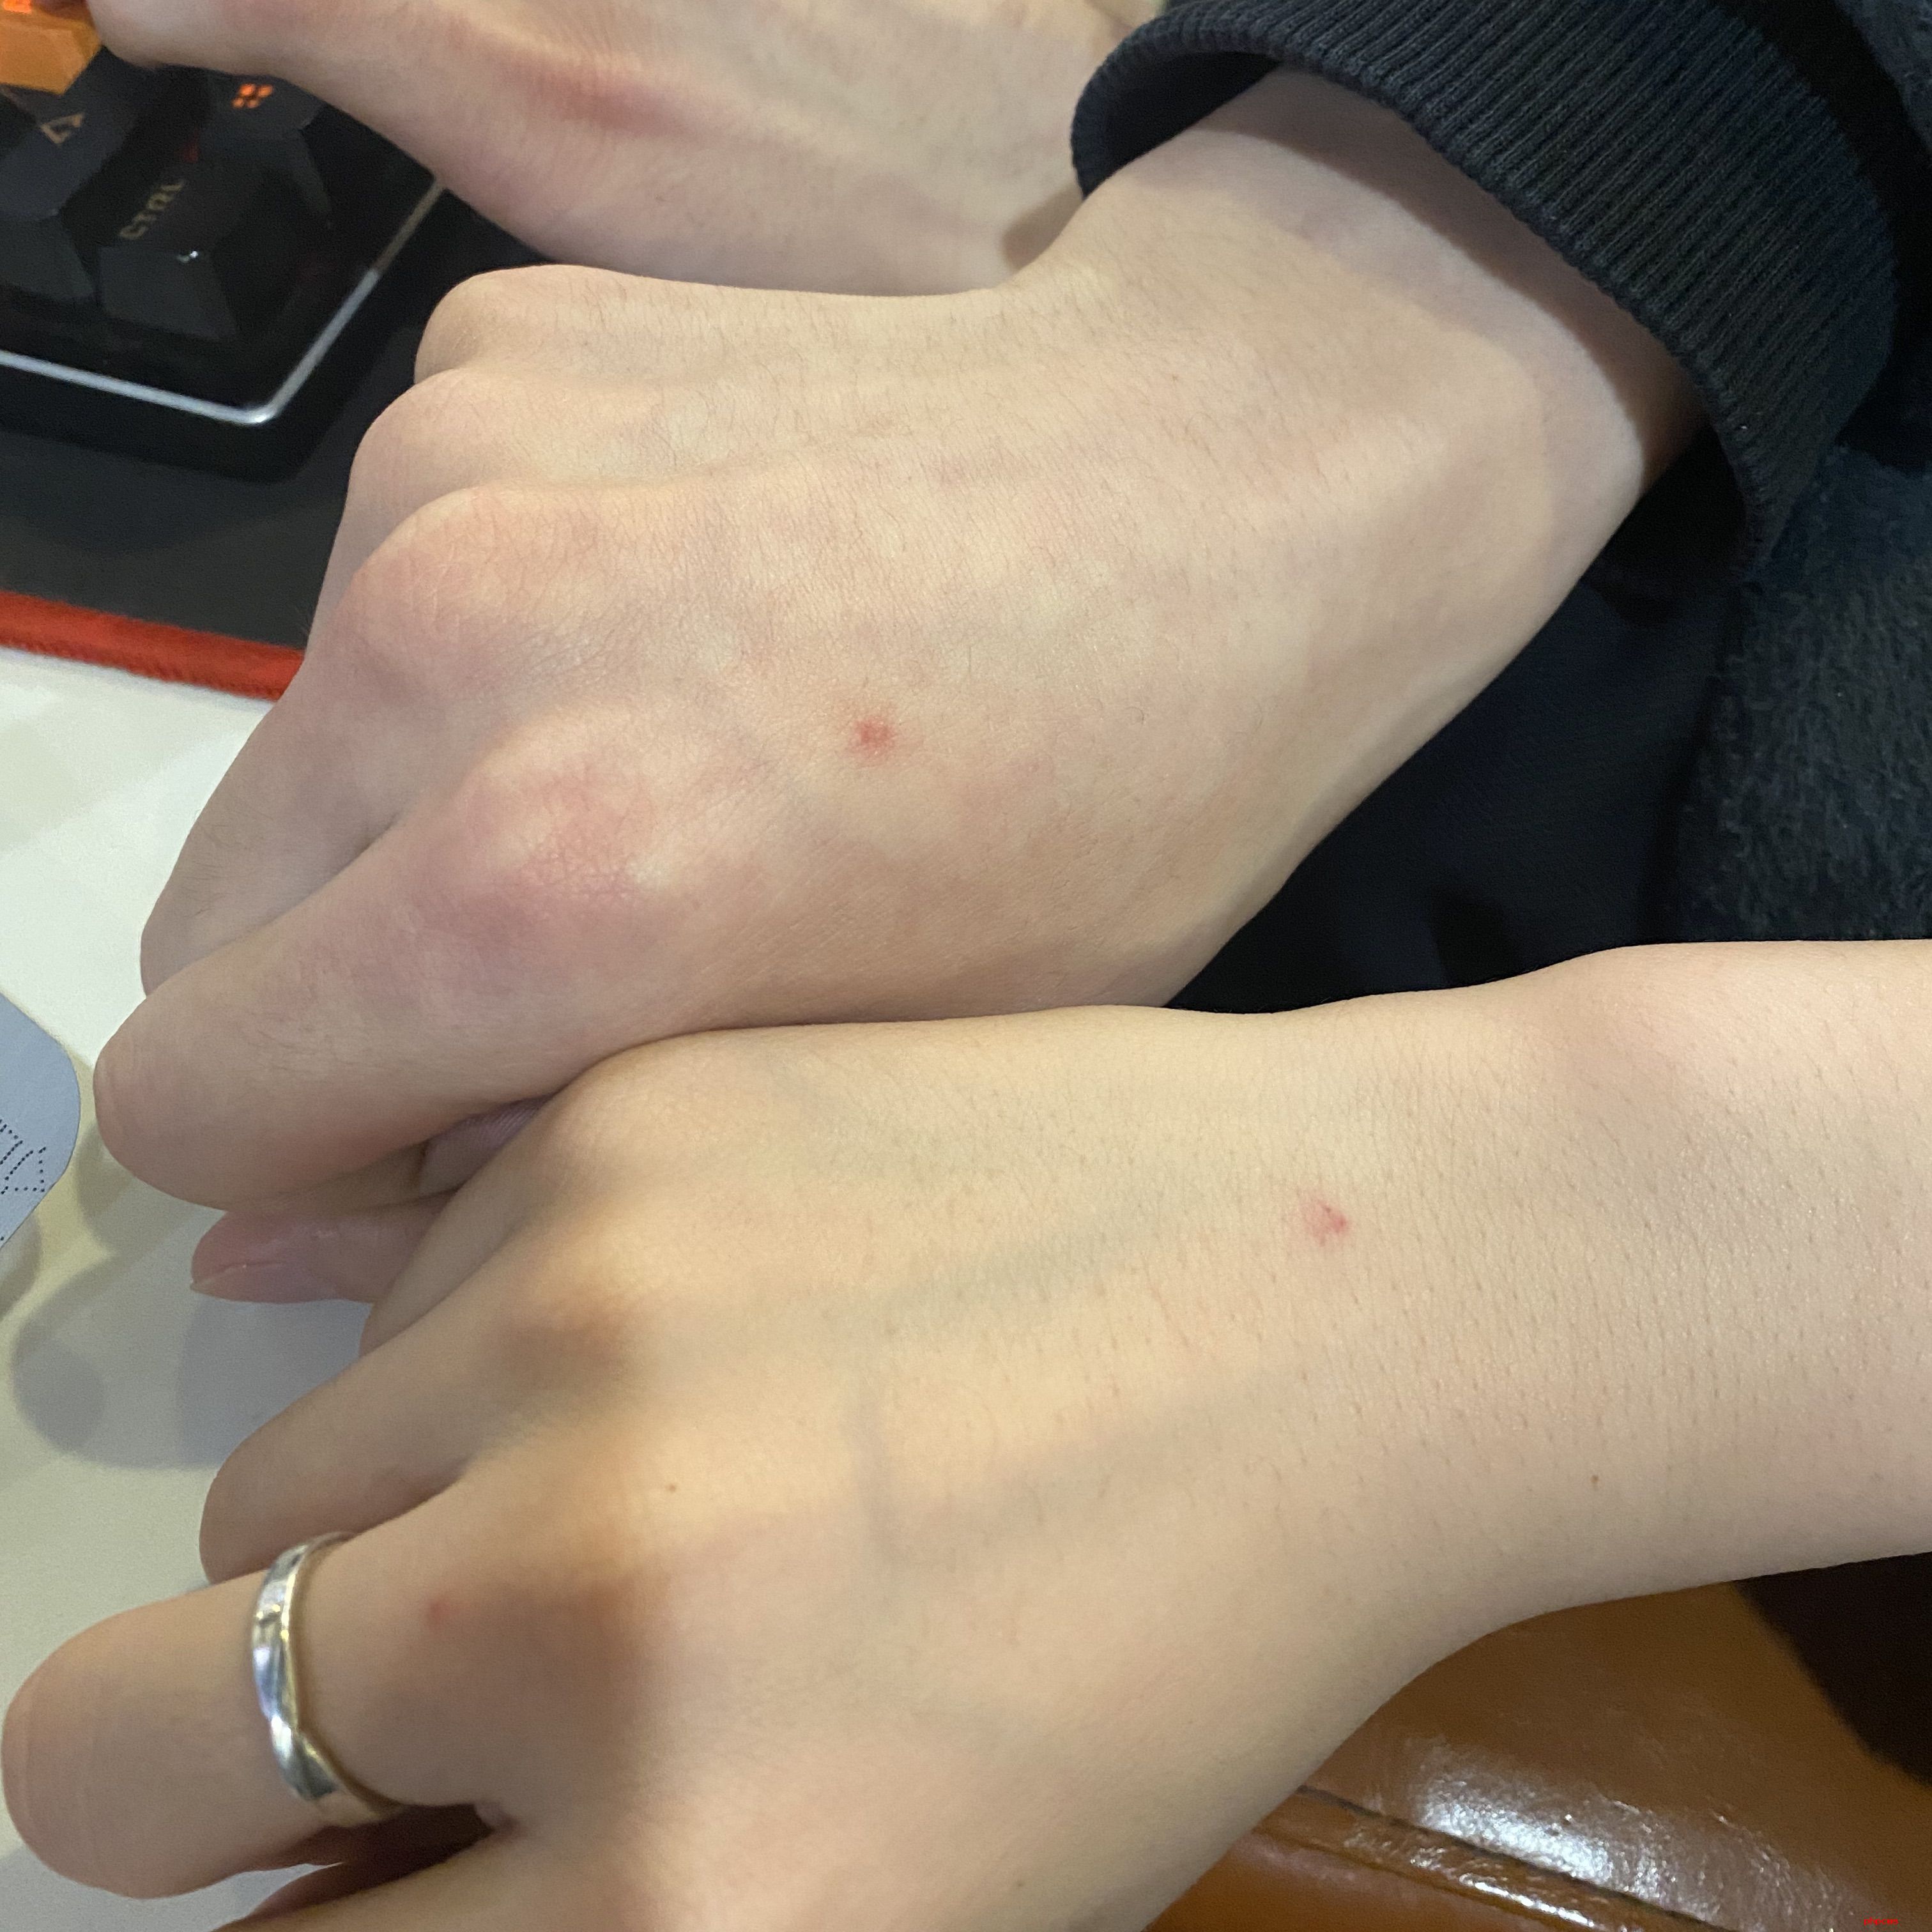 挤破丘疹恐造成二次损伤 广东蚊子如何“防御”？